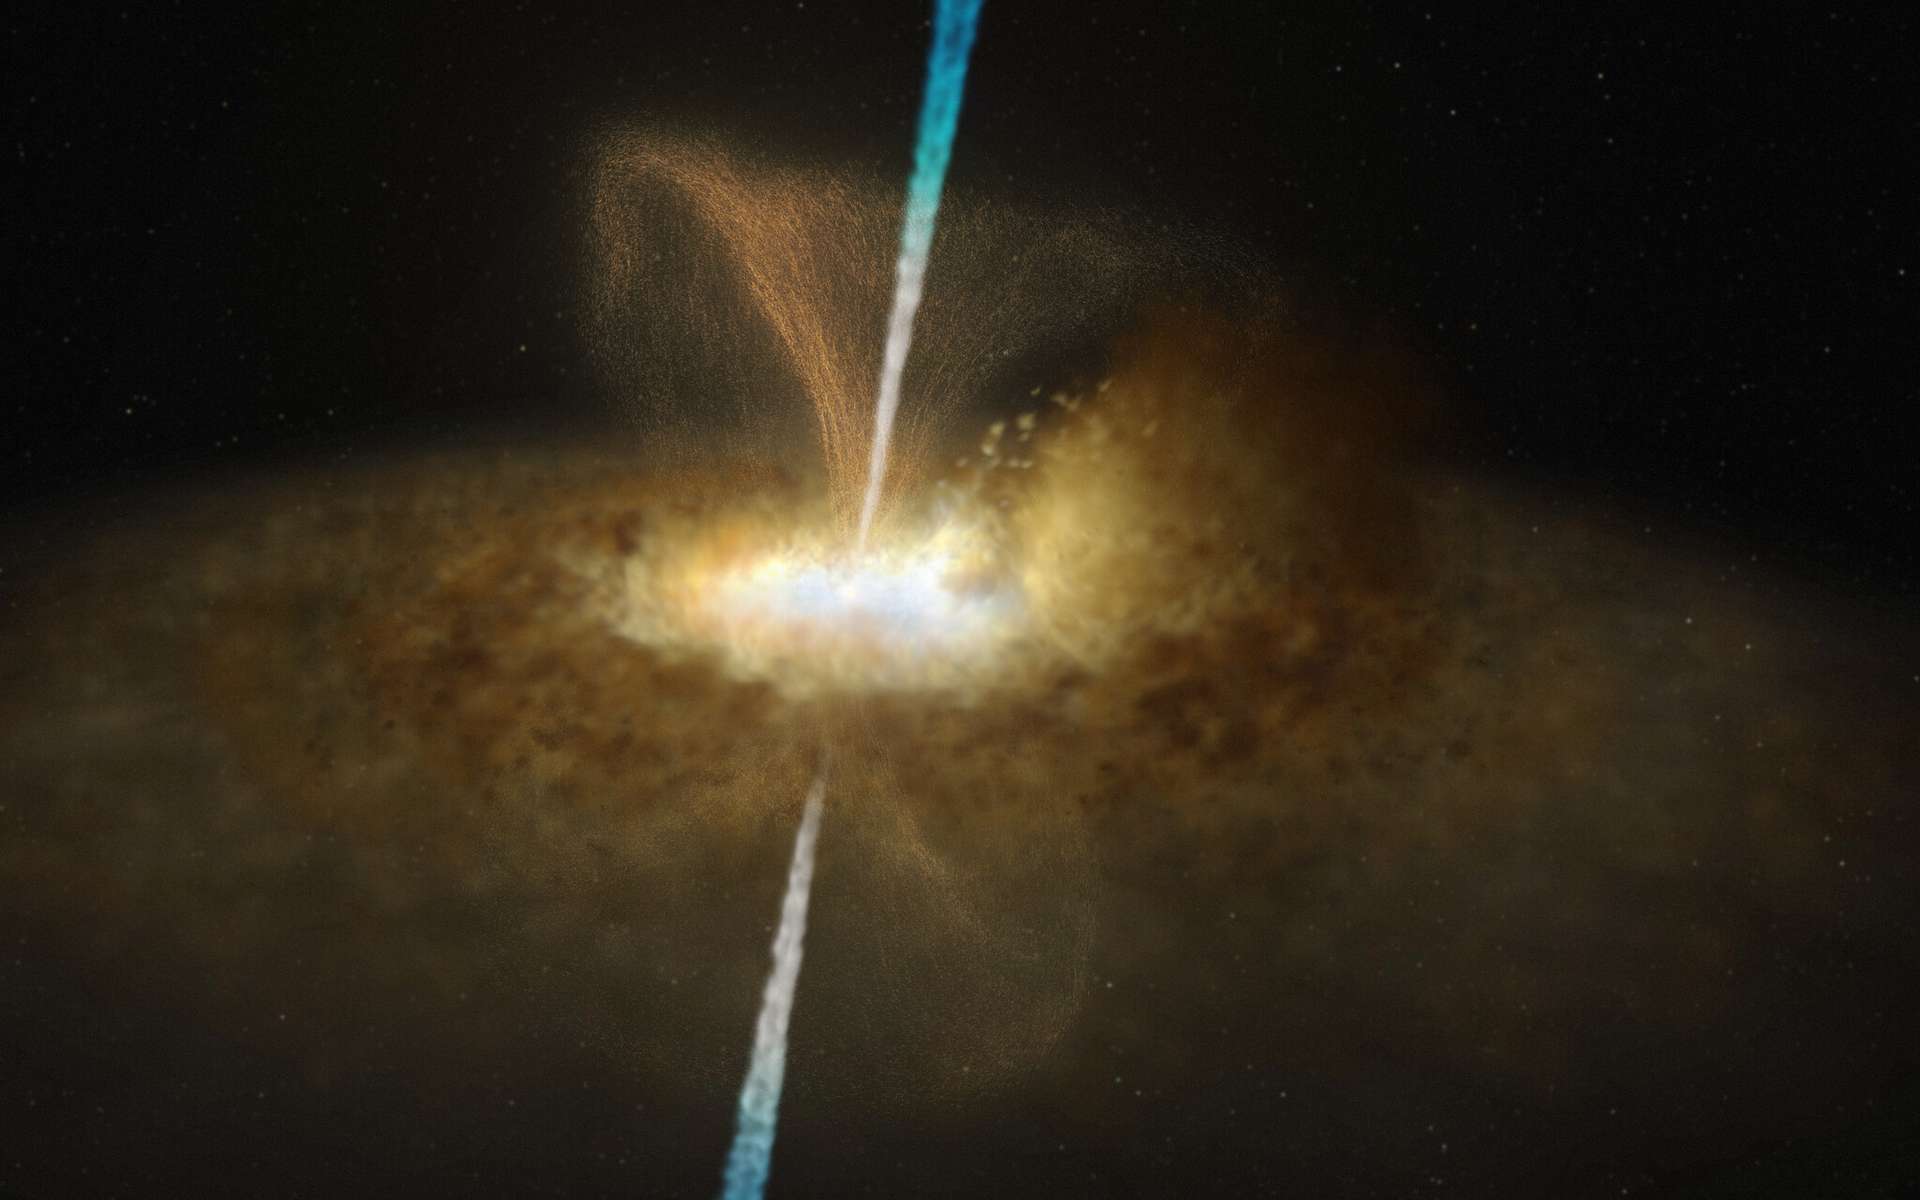 Cette illustration offre un aperçu réaliste du noyau de Messier 77. À l’instar des autres noyaux actifs de galaxie, les régions centrales de Messier 77 sont alimentées par un trou noir entouré d’un mince disque d’accrétion, en périphérie duquel se trouve un volumineux anneau ou tore de gaz et de poussière. Dans le cas de Messier 77, cet anneau dense masque totalement la présence du trou noir supermassif. Ce noyau actif de galaxie présente vraisemblablement des jets, ainsi que des vents de poussière, qui s'échappent de la région située en périphérie du trou noir, perpendiculairement au disque d'accrétion qui l'entoure. © ESO, M. Kornmesser et L. Calçada